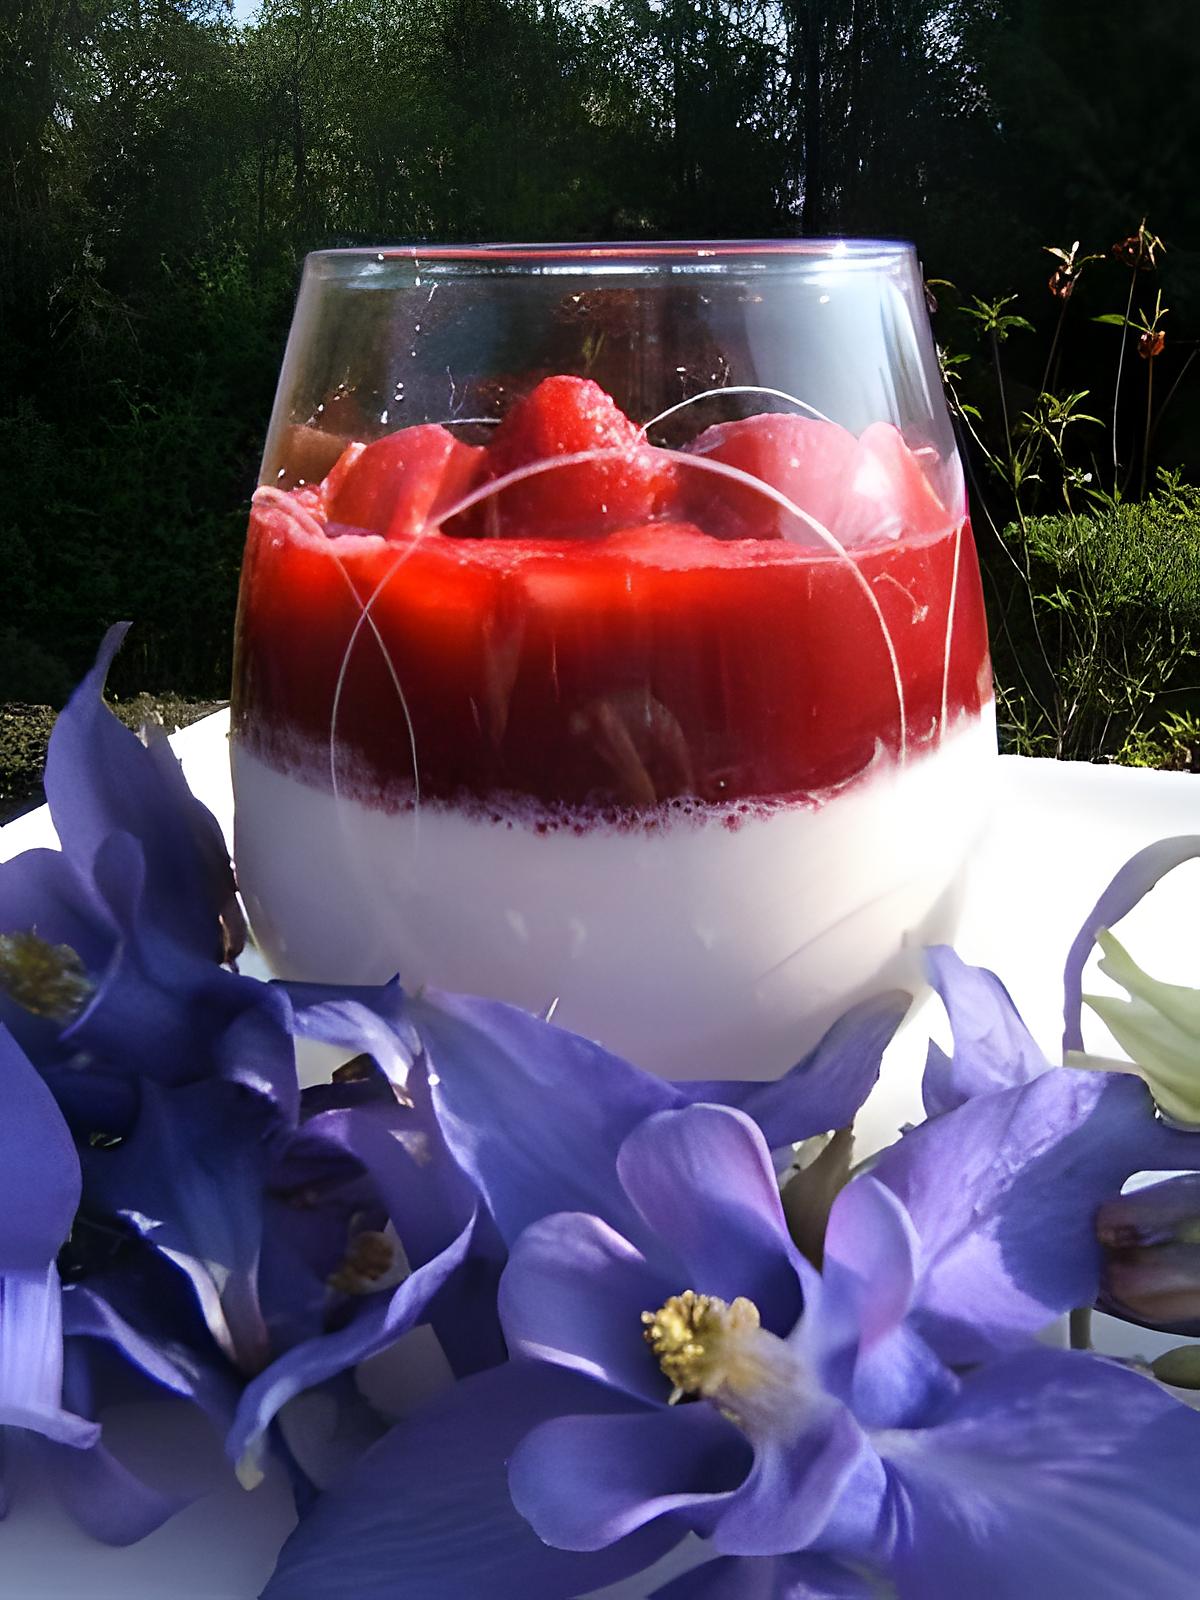 recette Panacotta express au sirop de rose , coulis de framboises et fraises